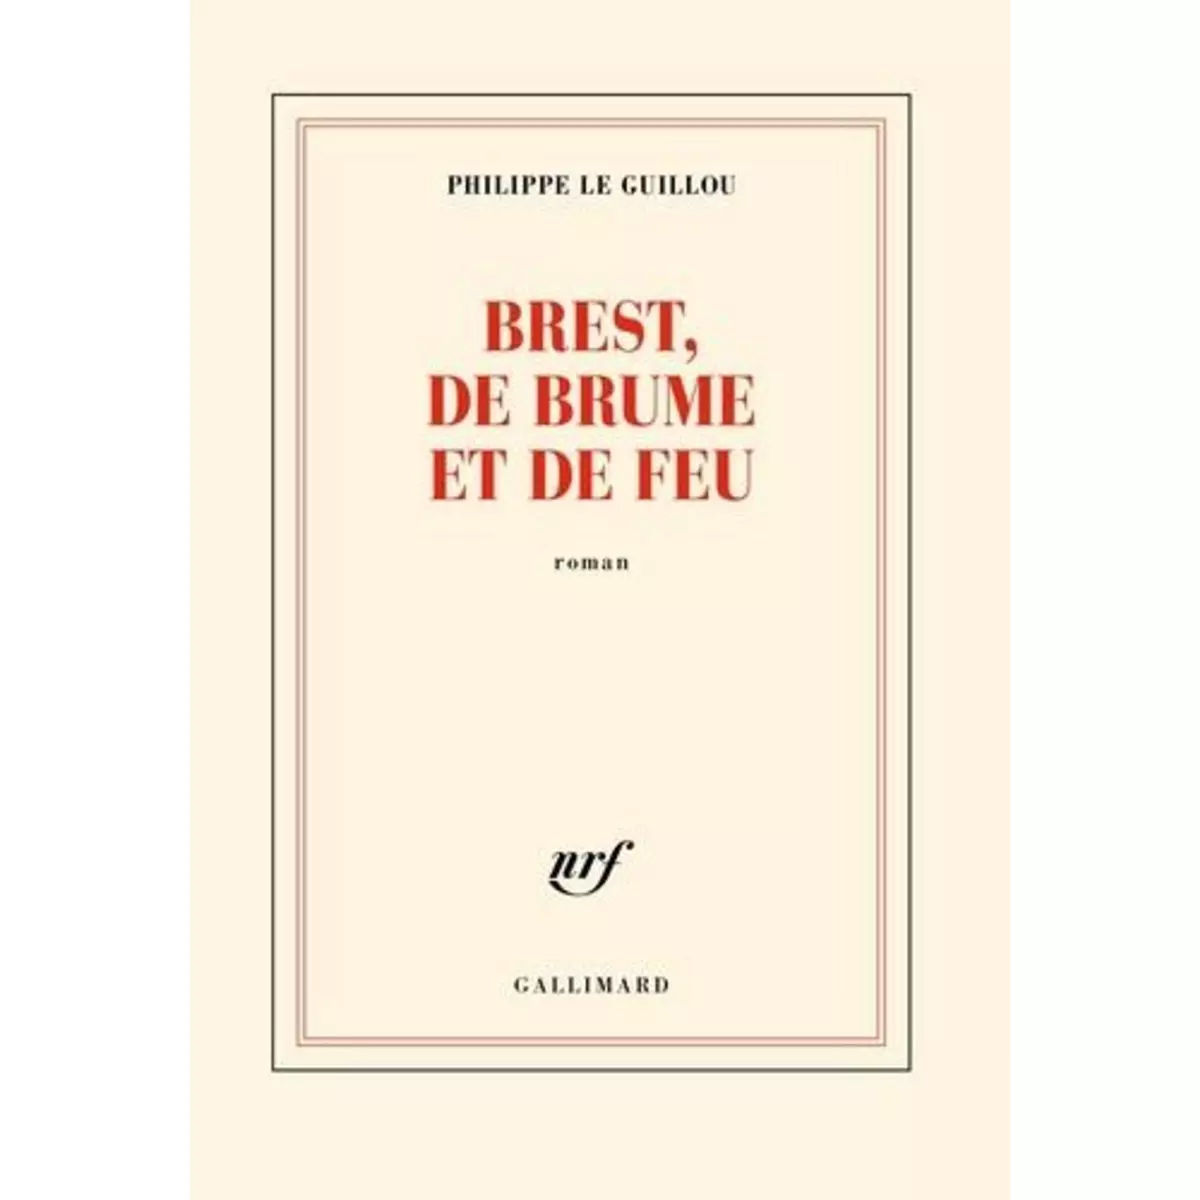  BREST, DE BRUME ET DE FEU, Le Guillou Philippe